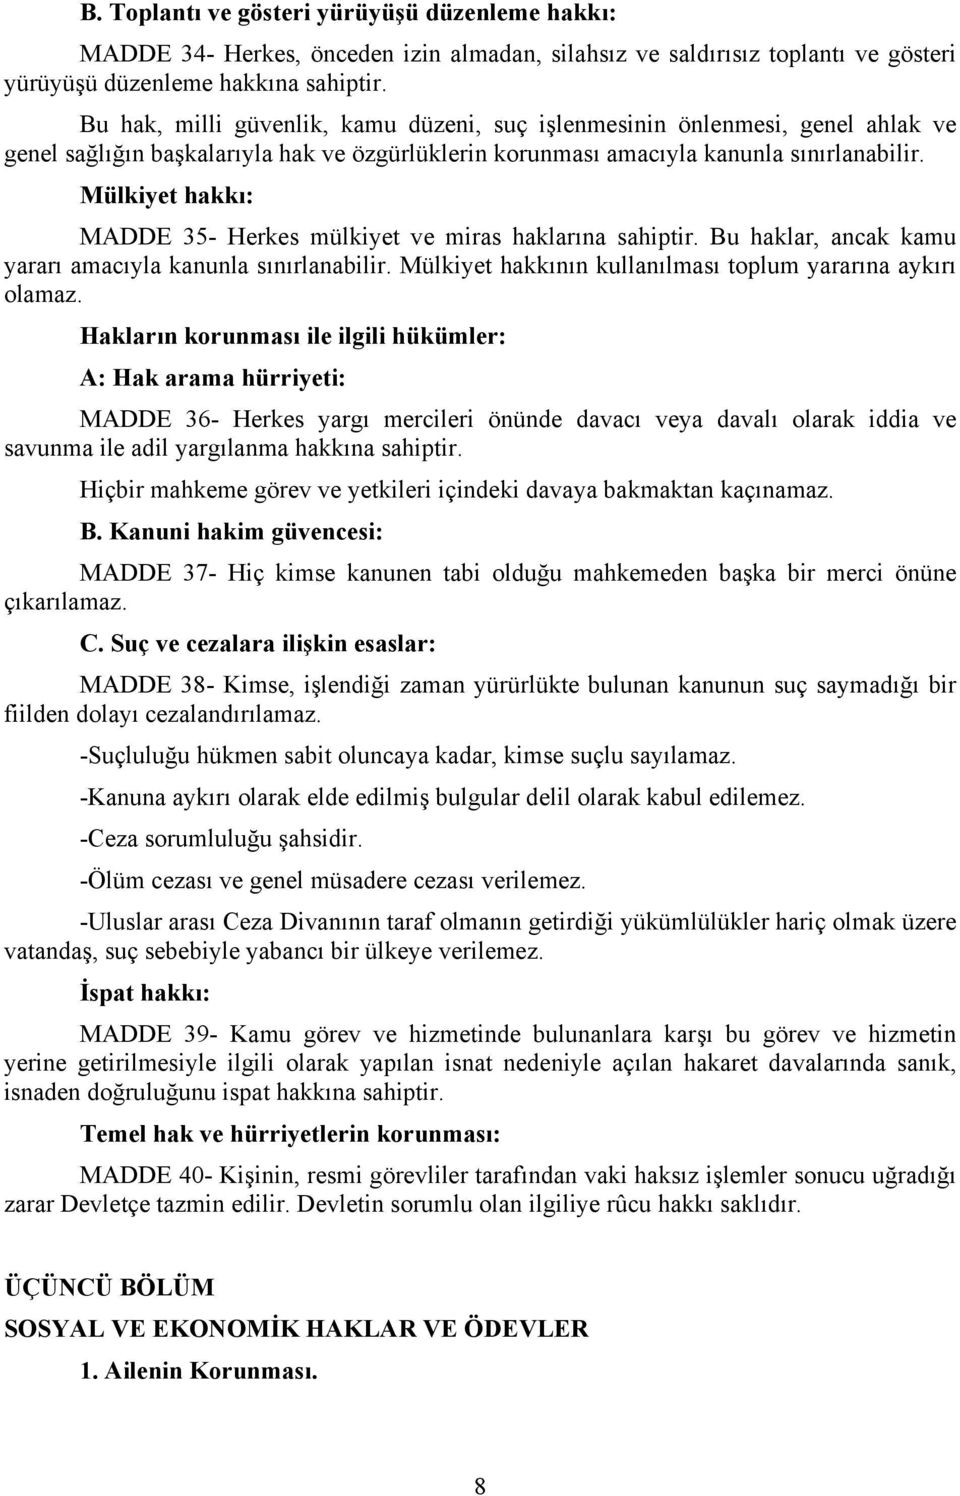 pdf наследственное право учебно методическое пособие 2004